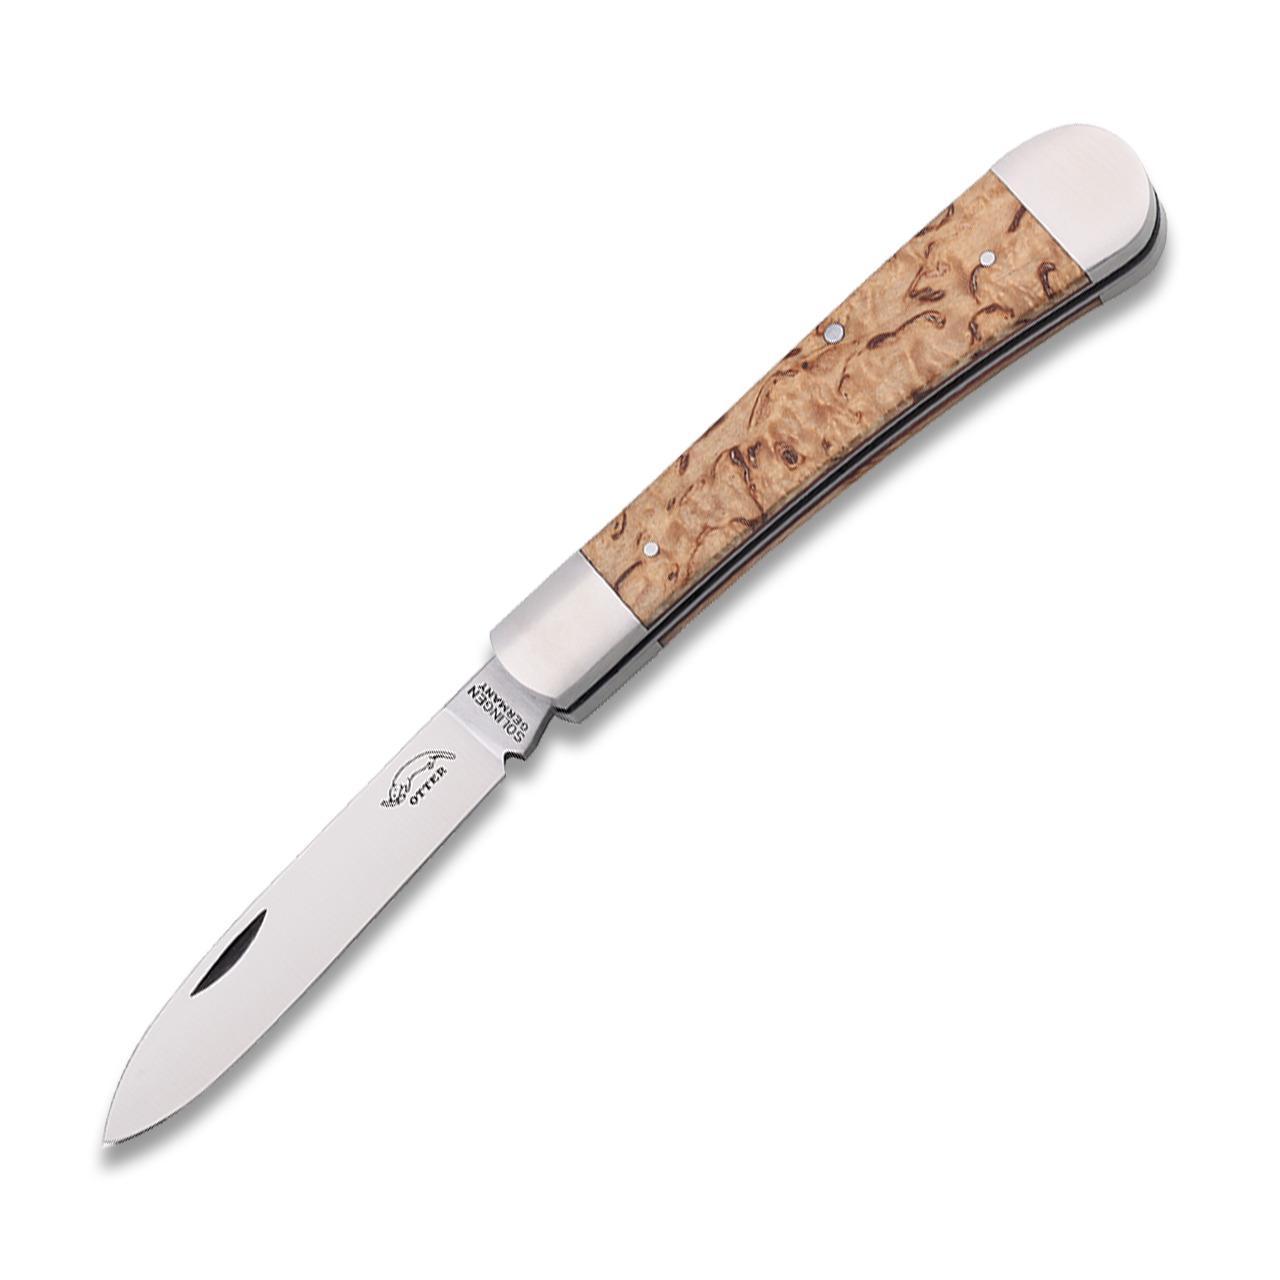 Pocket knife "Levin S" 268